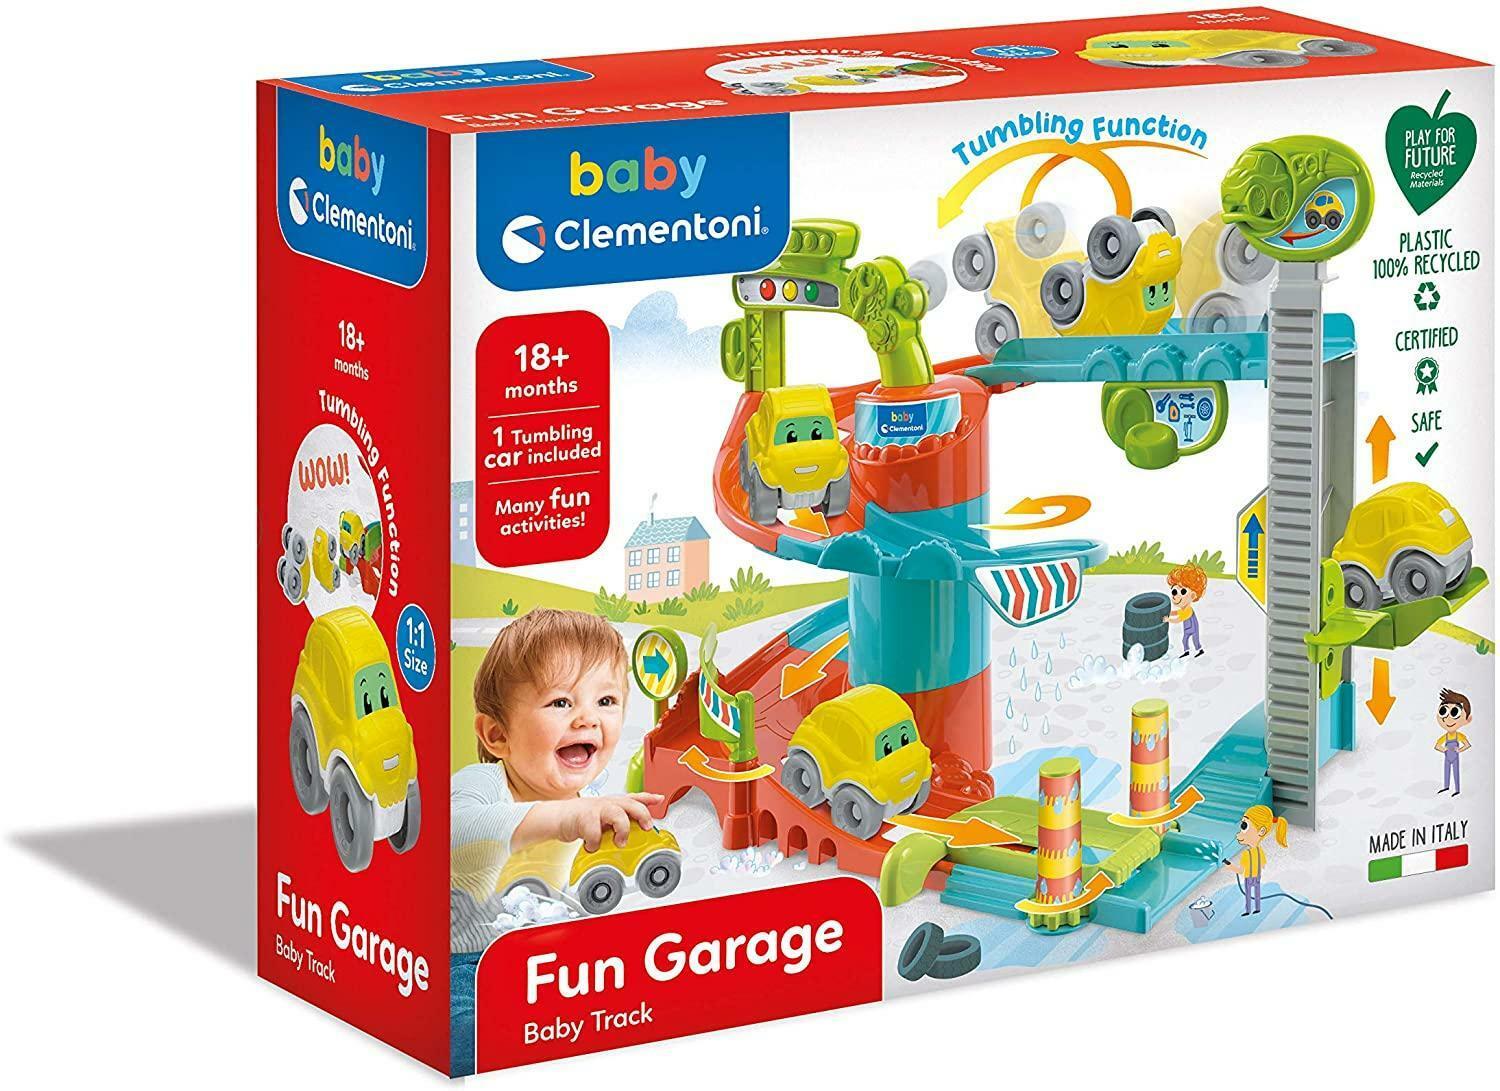 clementoni fun garage baby track